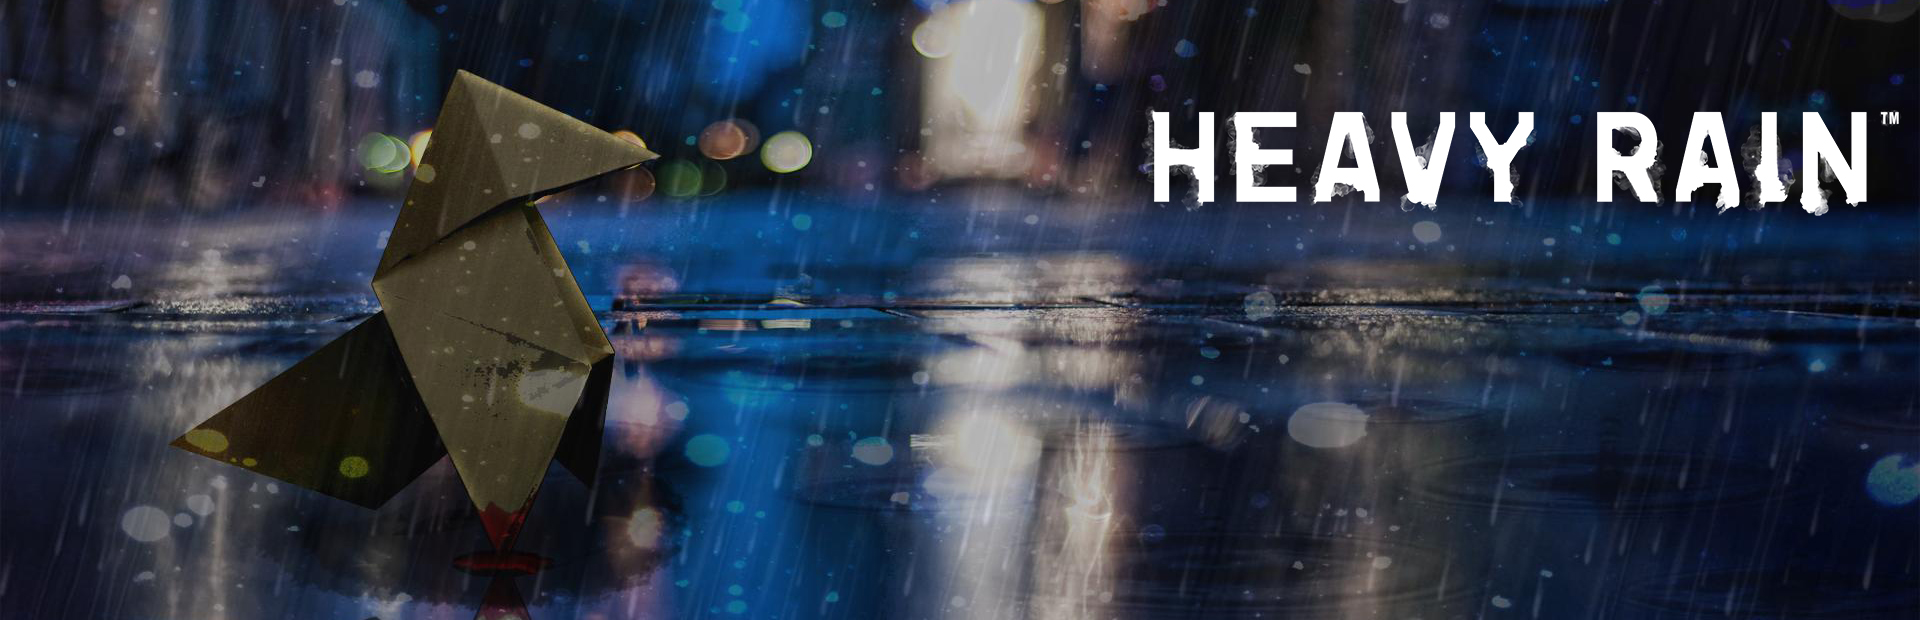 دانلود بازی Heavy Rain برای PC | گیمباتو